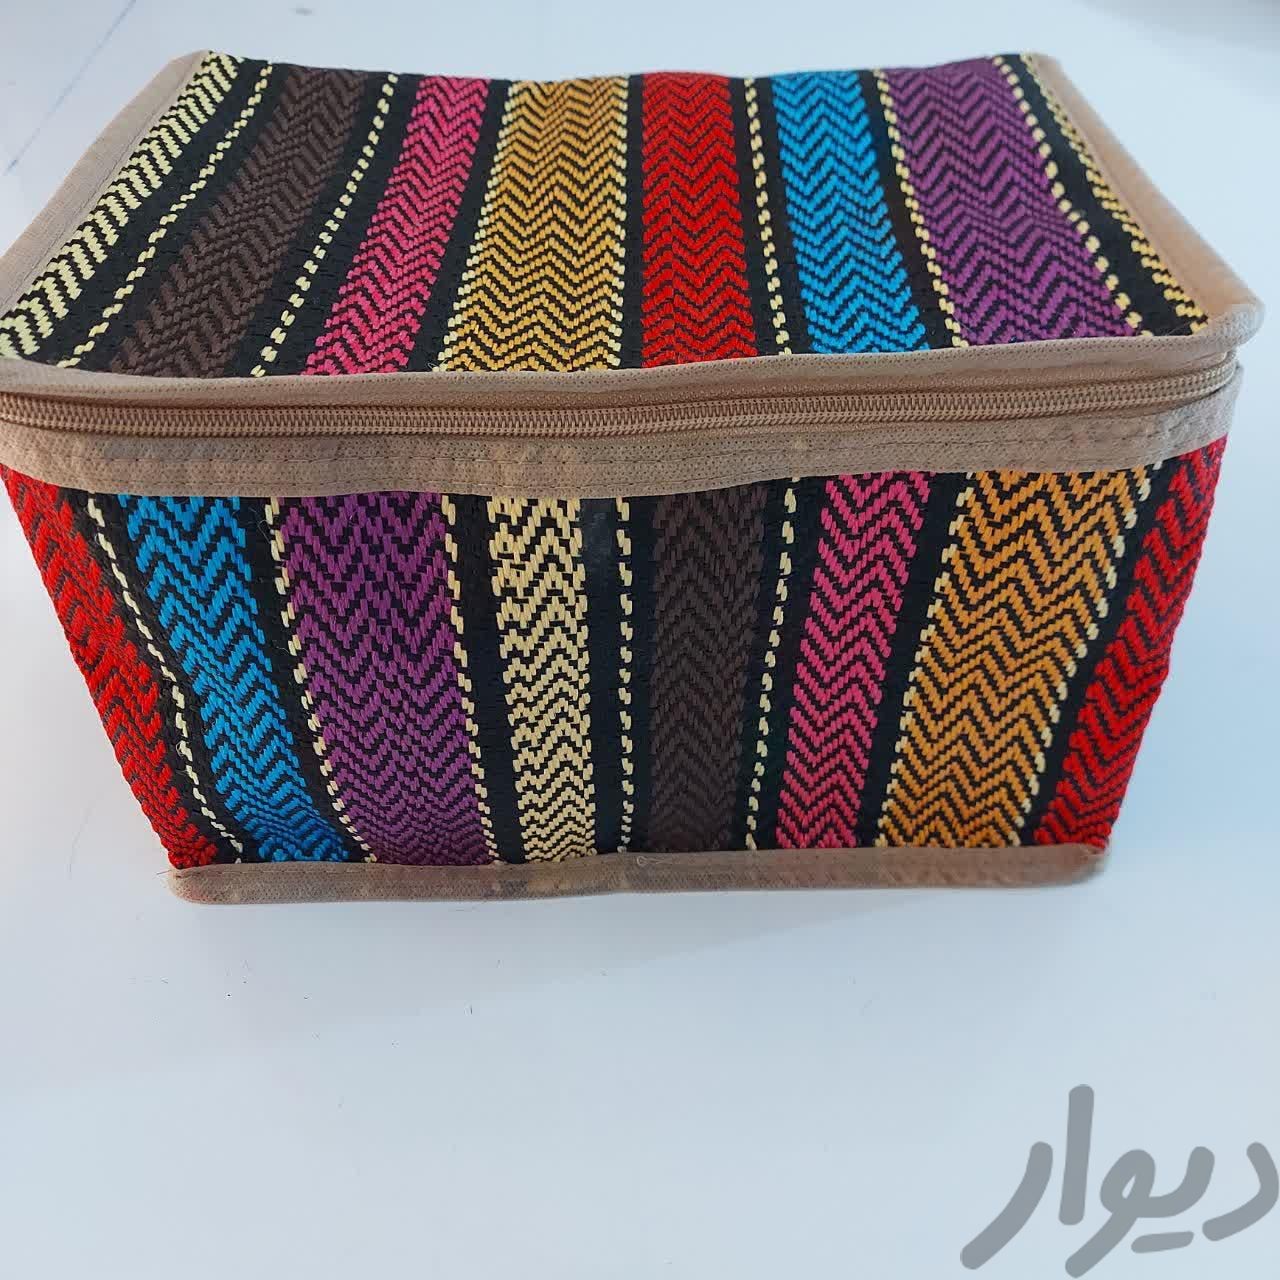 بقچه باکس لباس و رختخواب سنتی جاجیمی با ضمانت|جاکفشی، کمد و دراور|تهران, بهداشت|دیوار